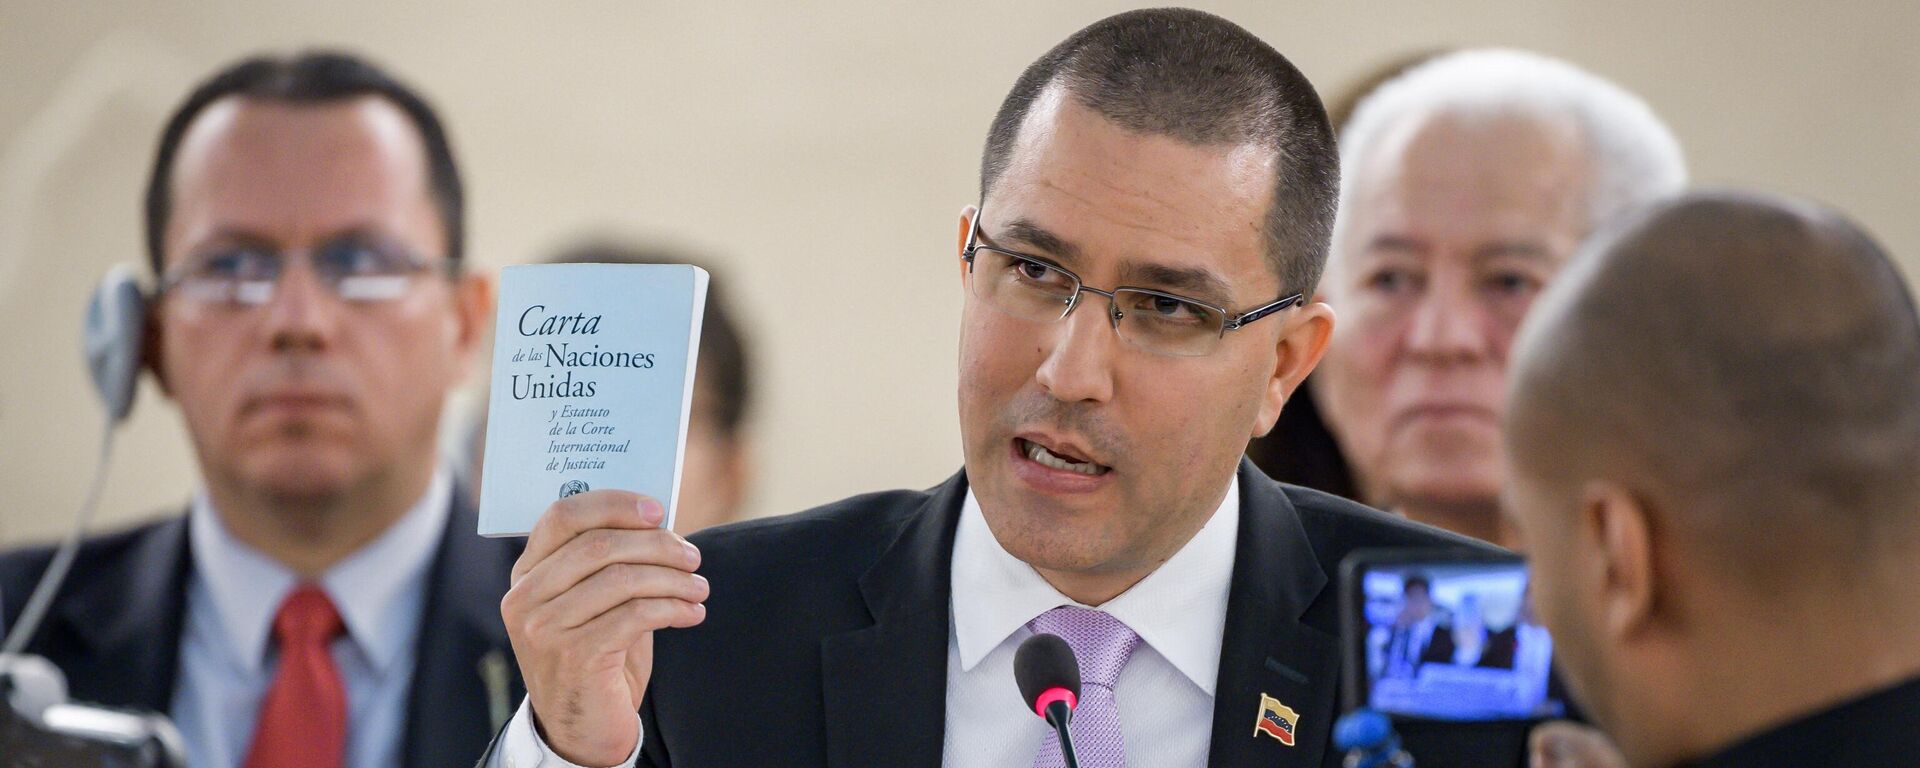 El ministro de Relaciones Exteriores de Venezuela, Jorge Arreaza, muestra la carta de las Naciones Unidas durante su discurso ante el Consejo de Derechos Humanos de las Naciones Unidas el 12 de septiembre de 2019 en Ginebra. - Sputnik Mundo, 1920, 16.03.2021